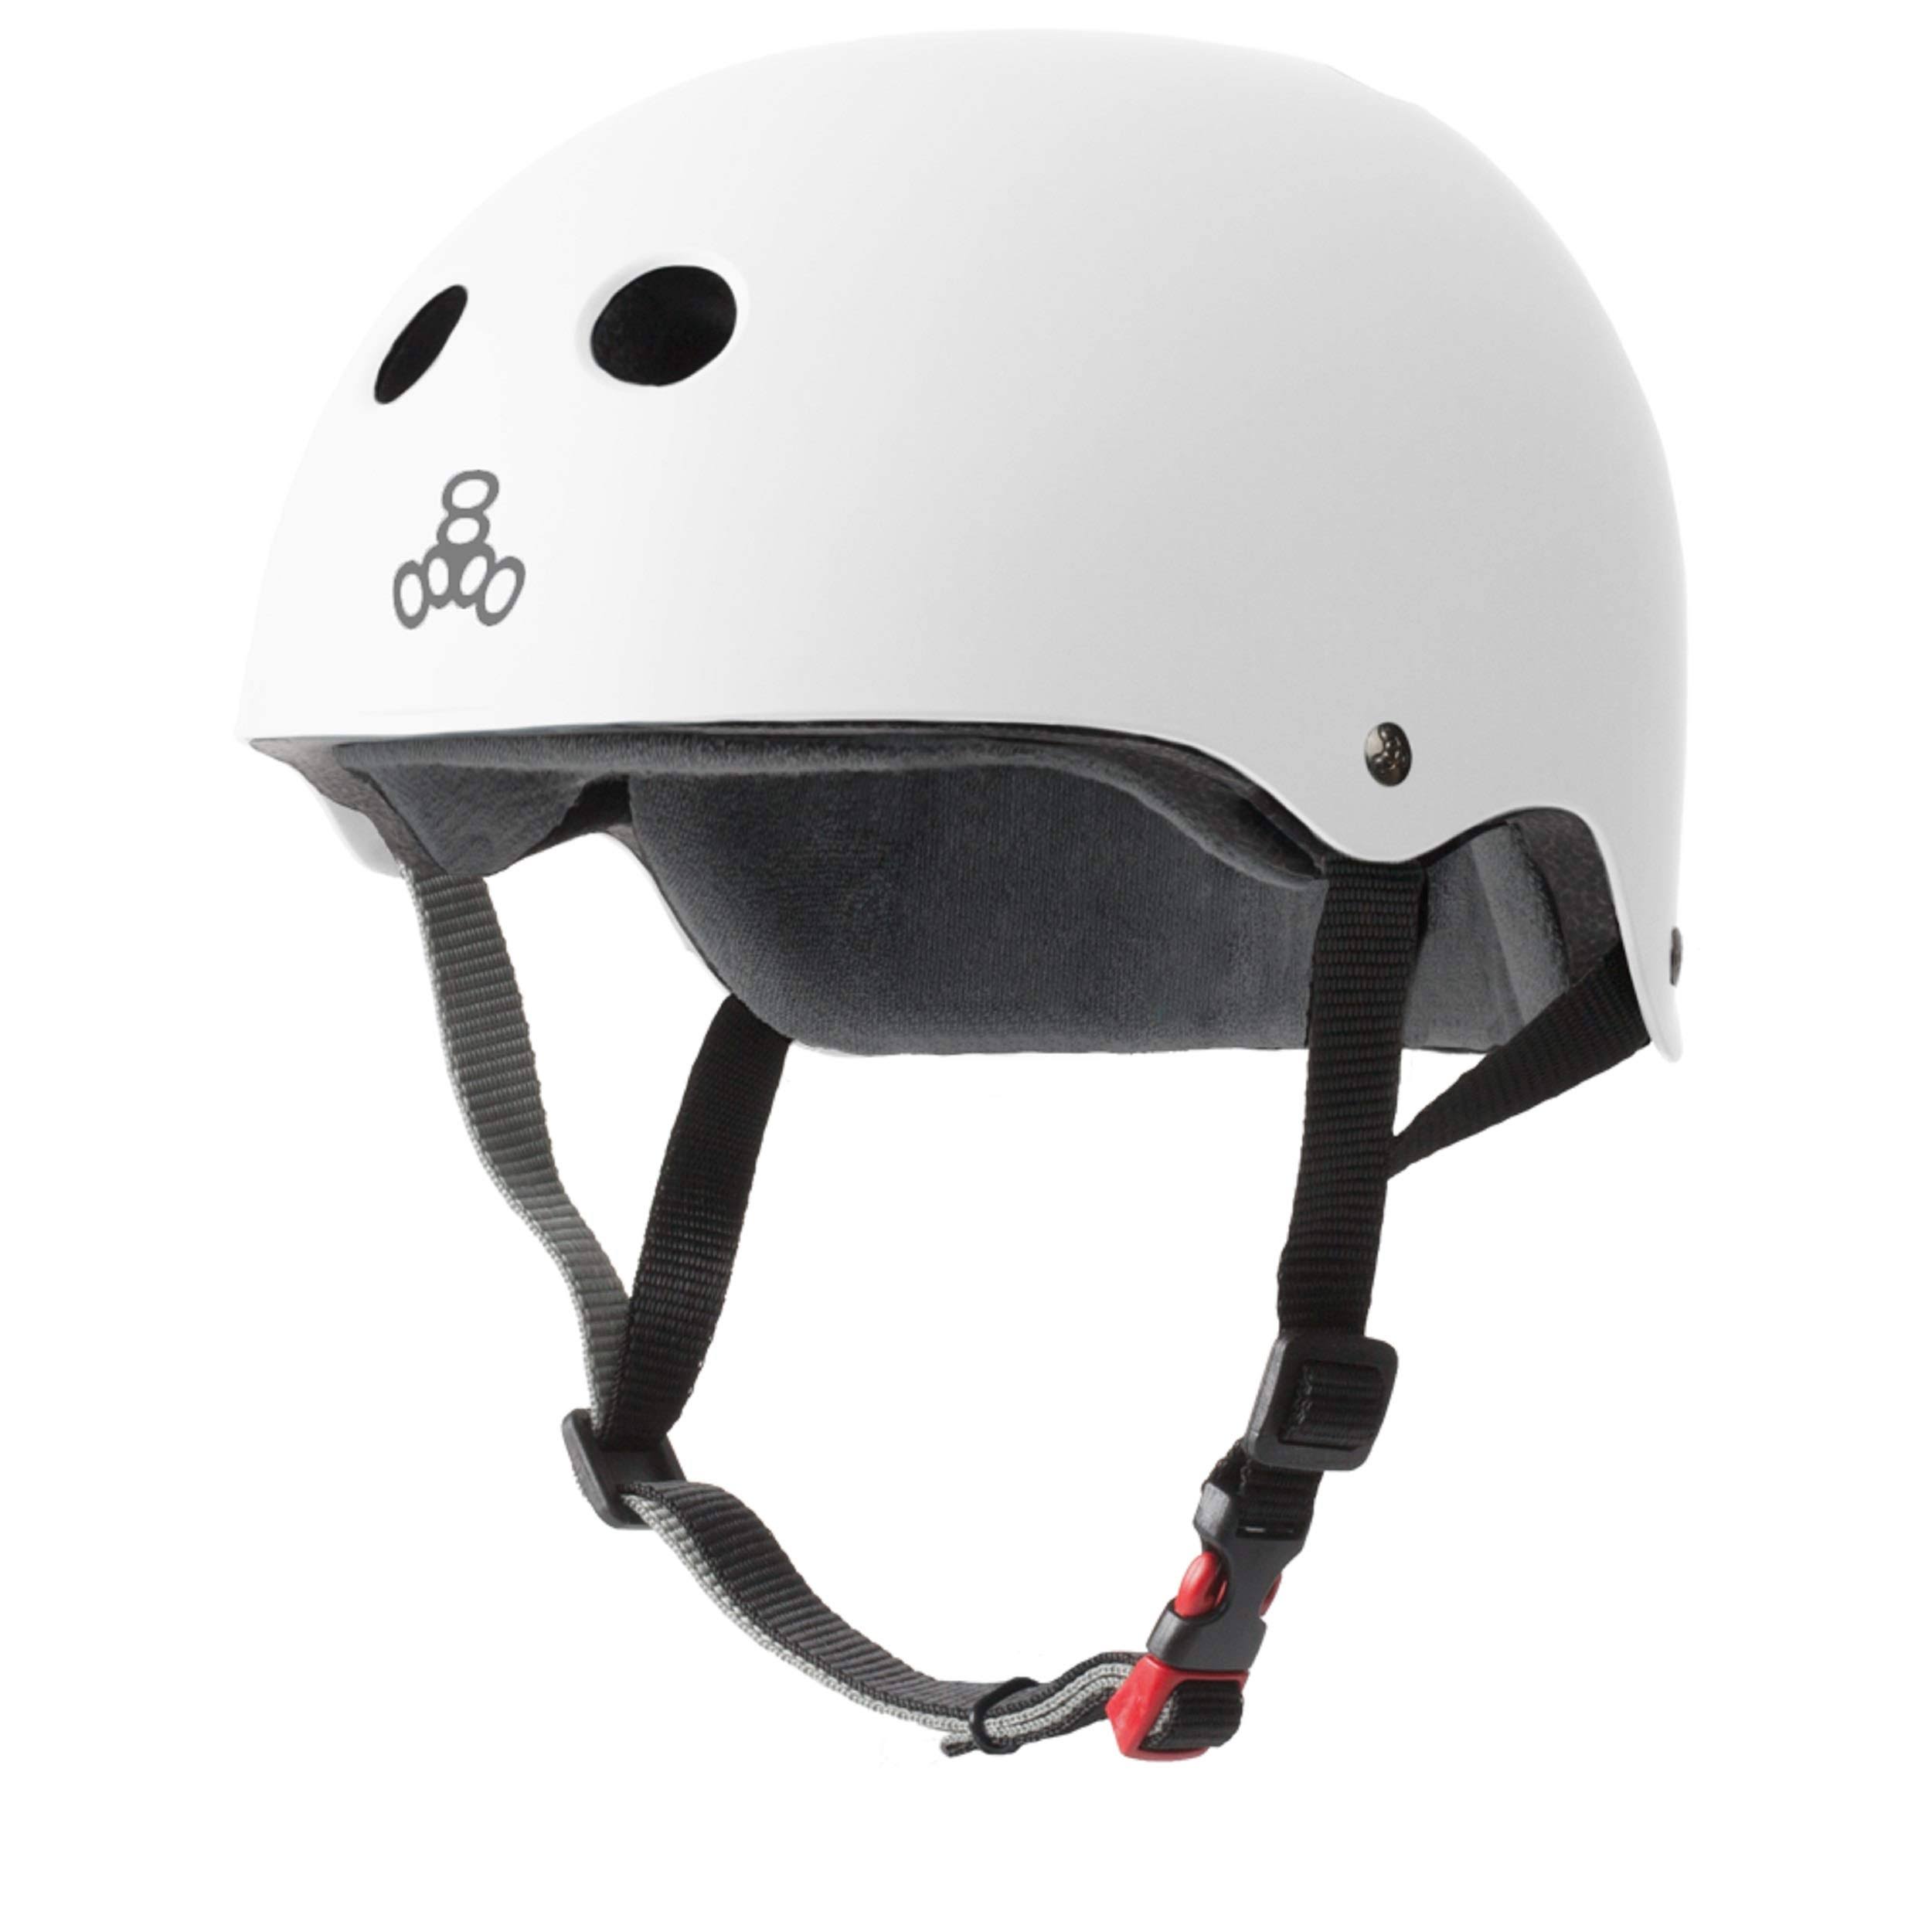 Triple 8 - The Certified Sweatsaver Helmet - White Rubber